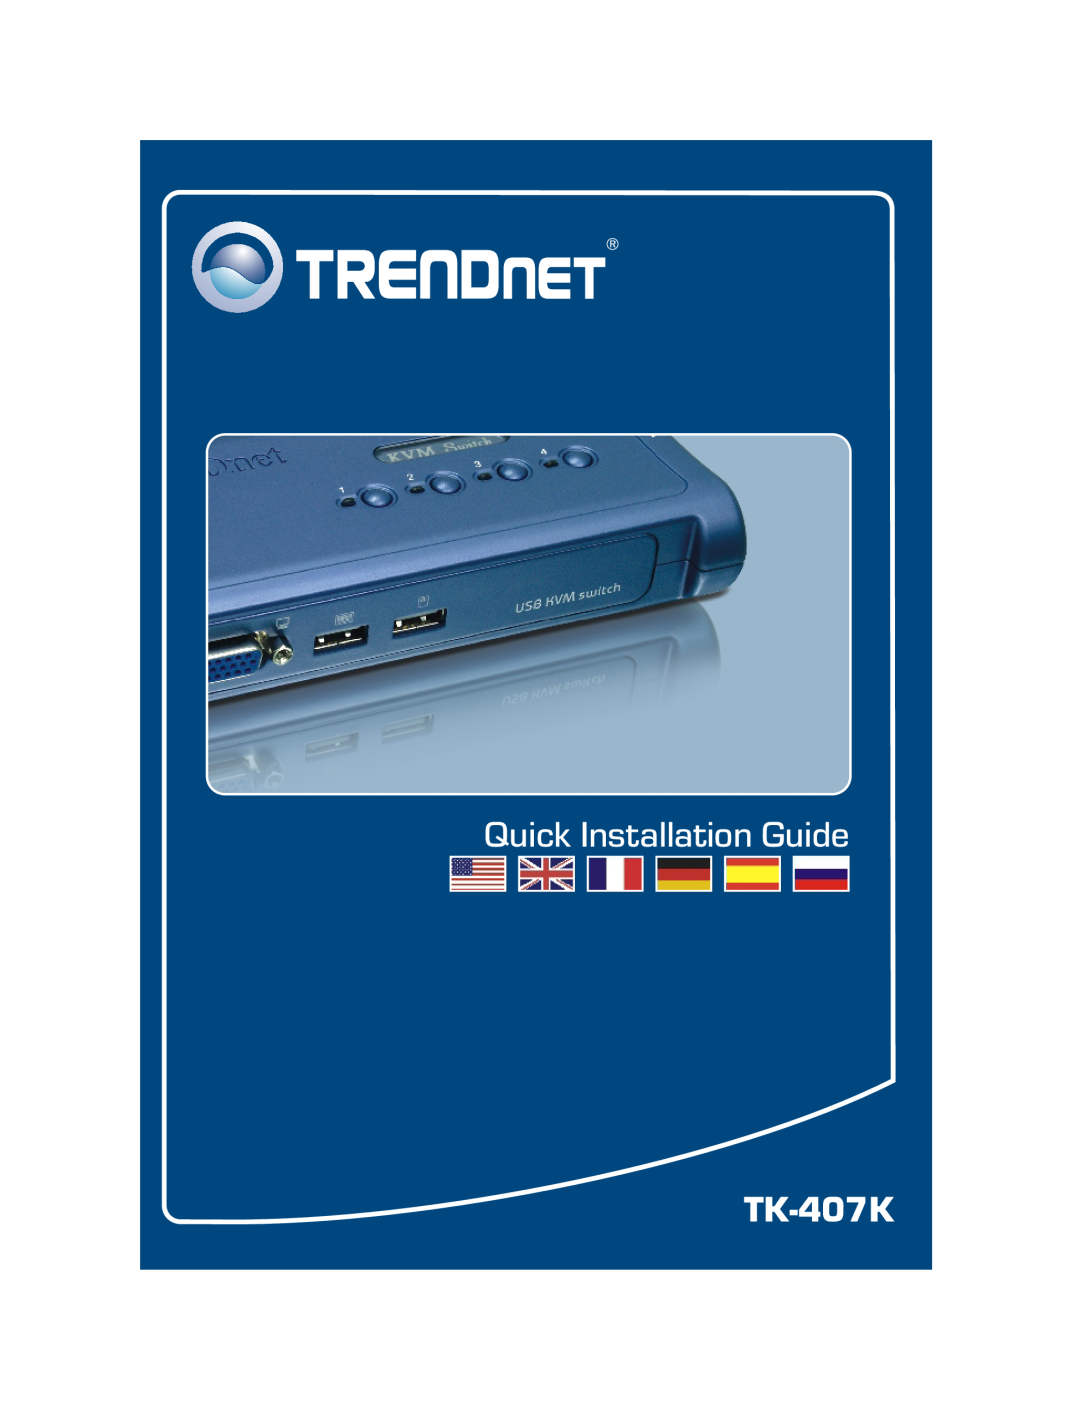 TRENDnet manual Quick Installation Guide, TK-207K TK-407K 